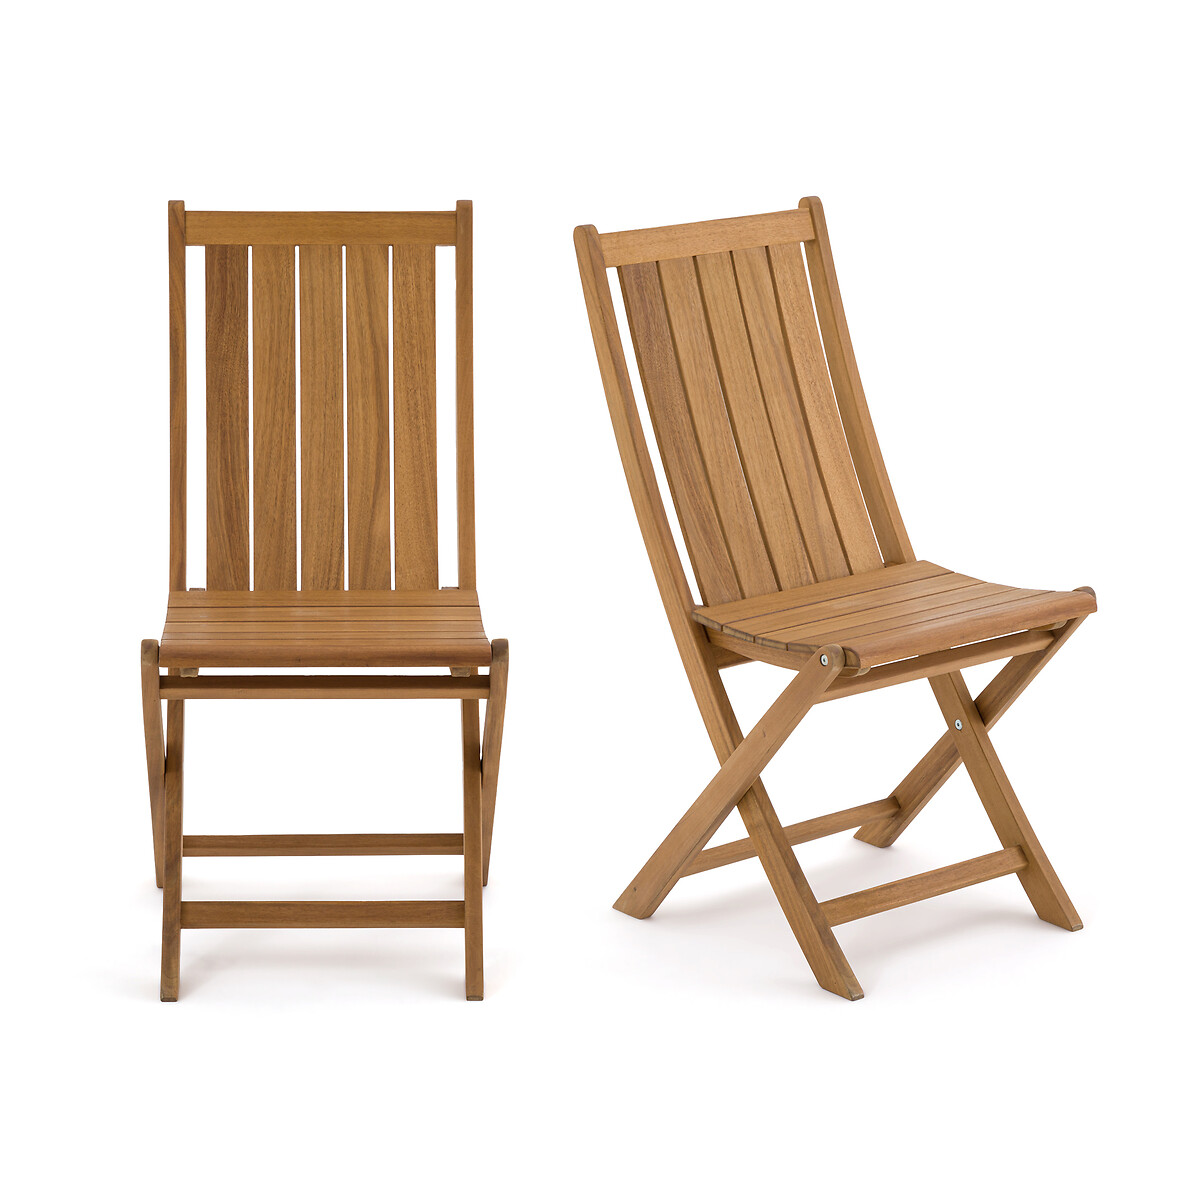 Комплект из двух стульев складных LaRedoute